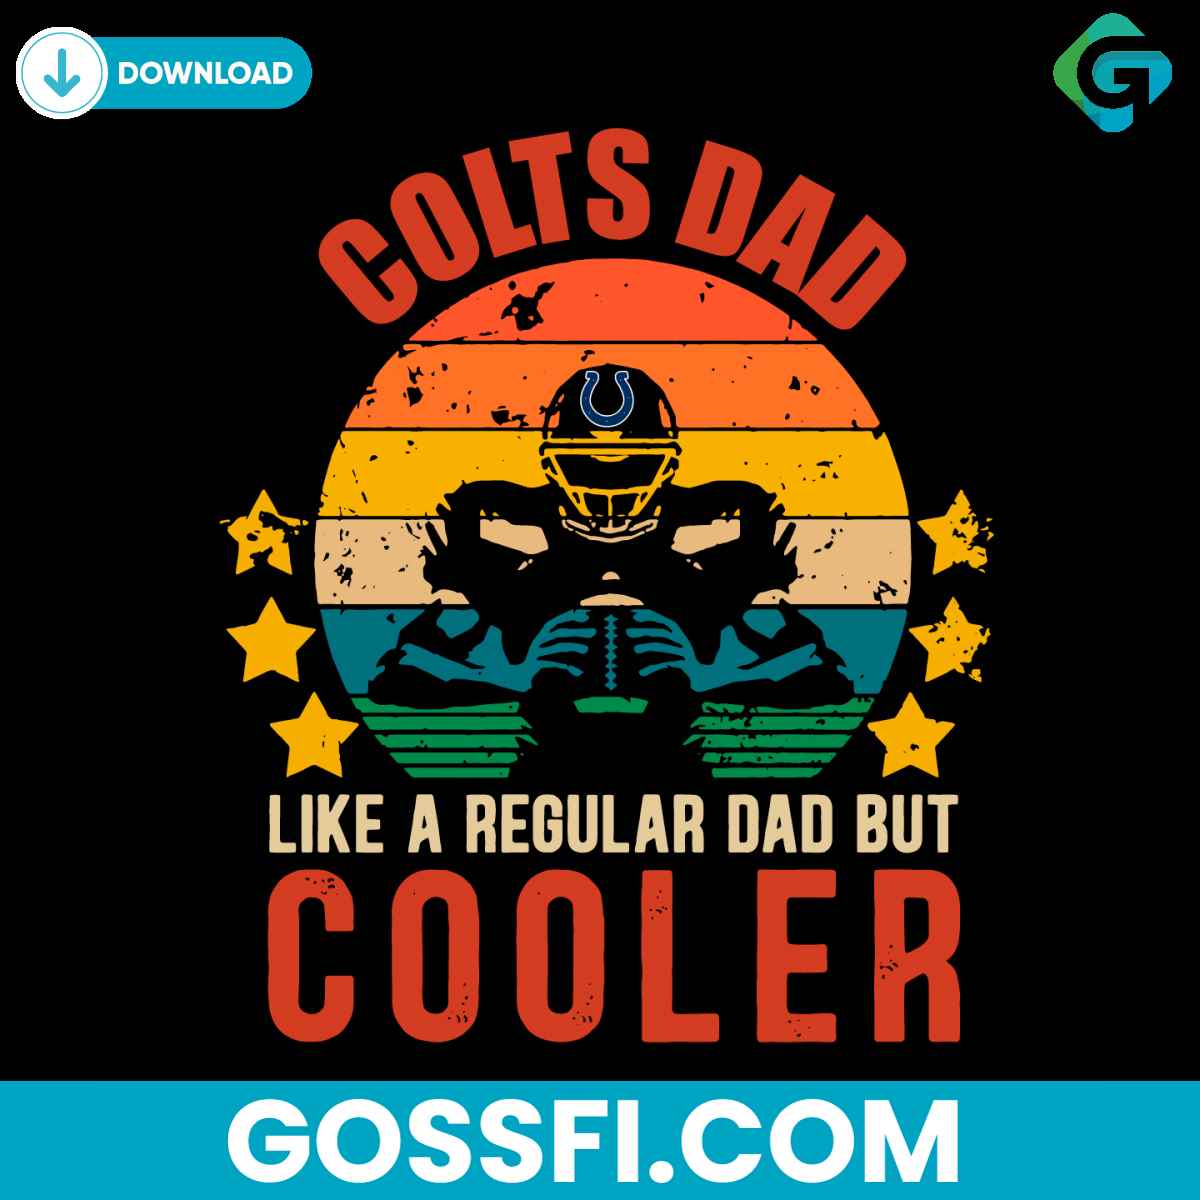 colts-dad-like-a-regular-dad-but-cooler-svg